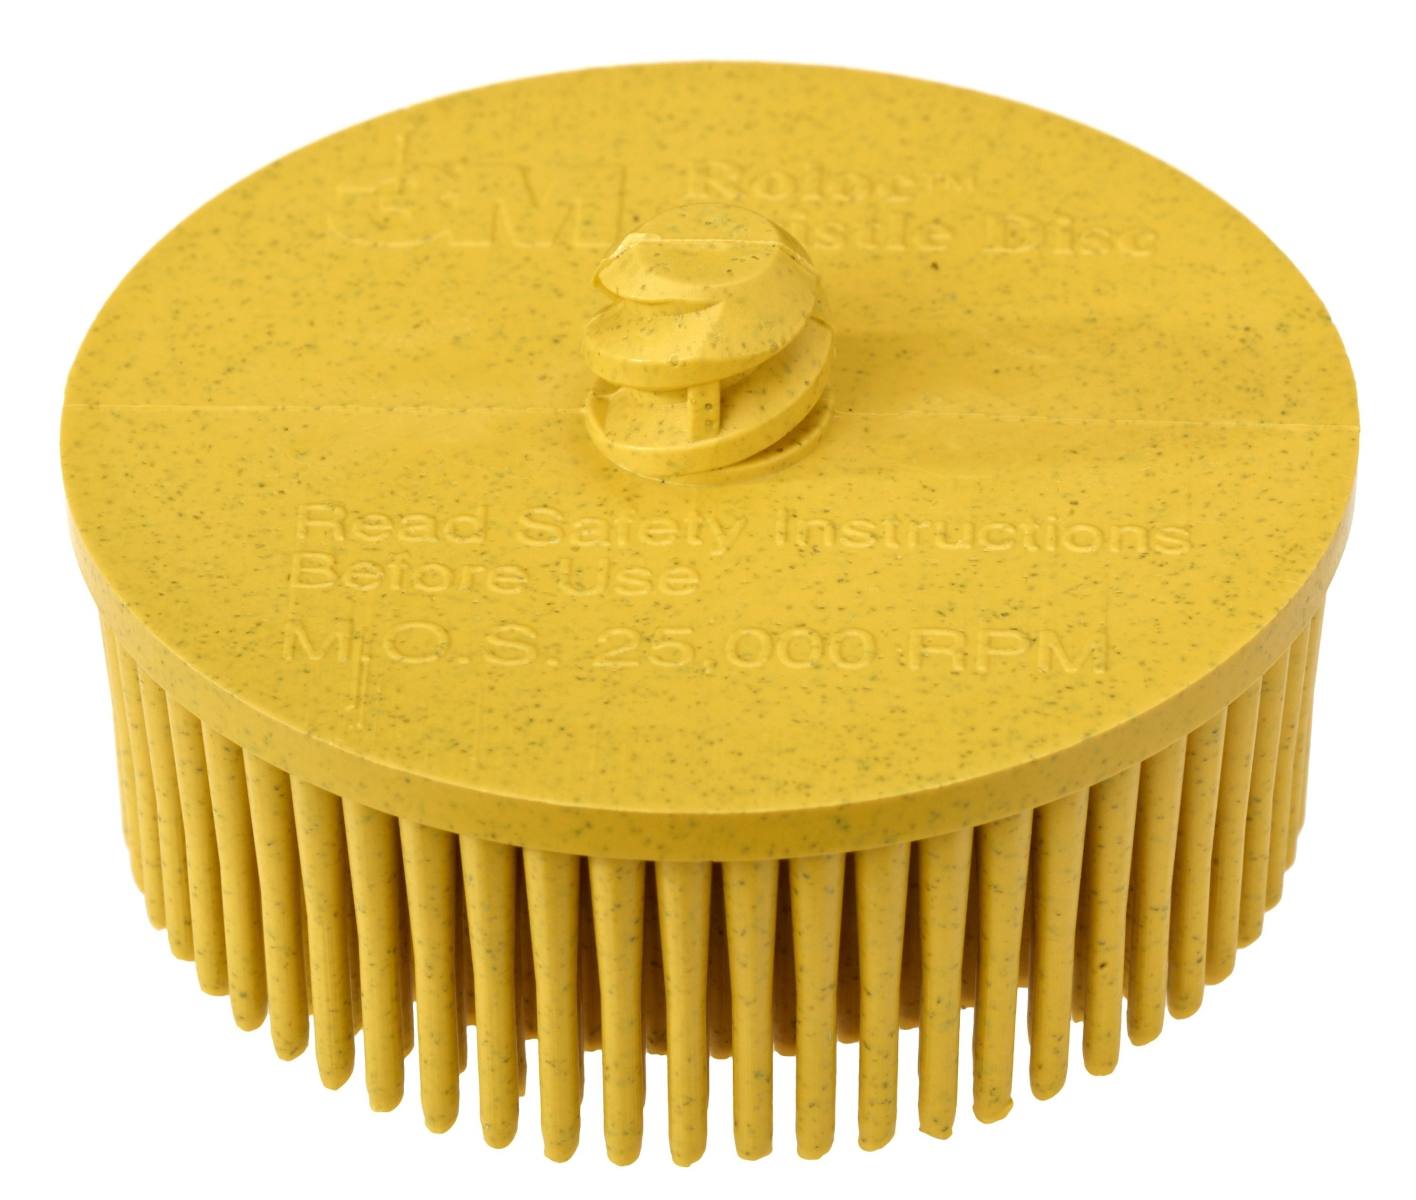 3M Scotch-Brite Roloc Bristle Disc RD-ZB, jaune, 76,2 mm, P80 #07527